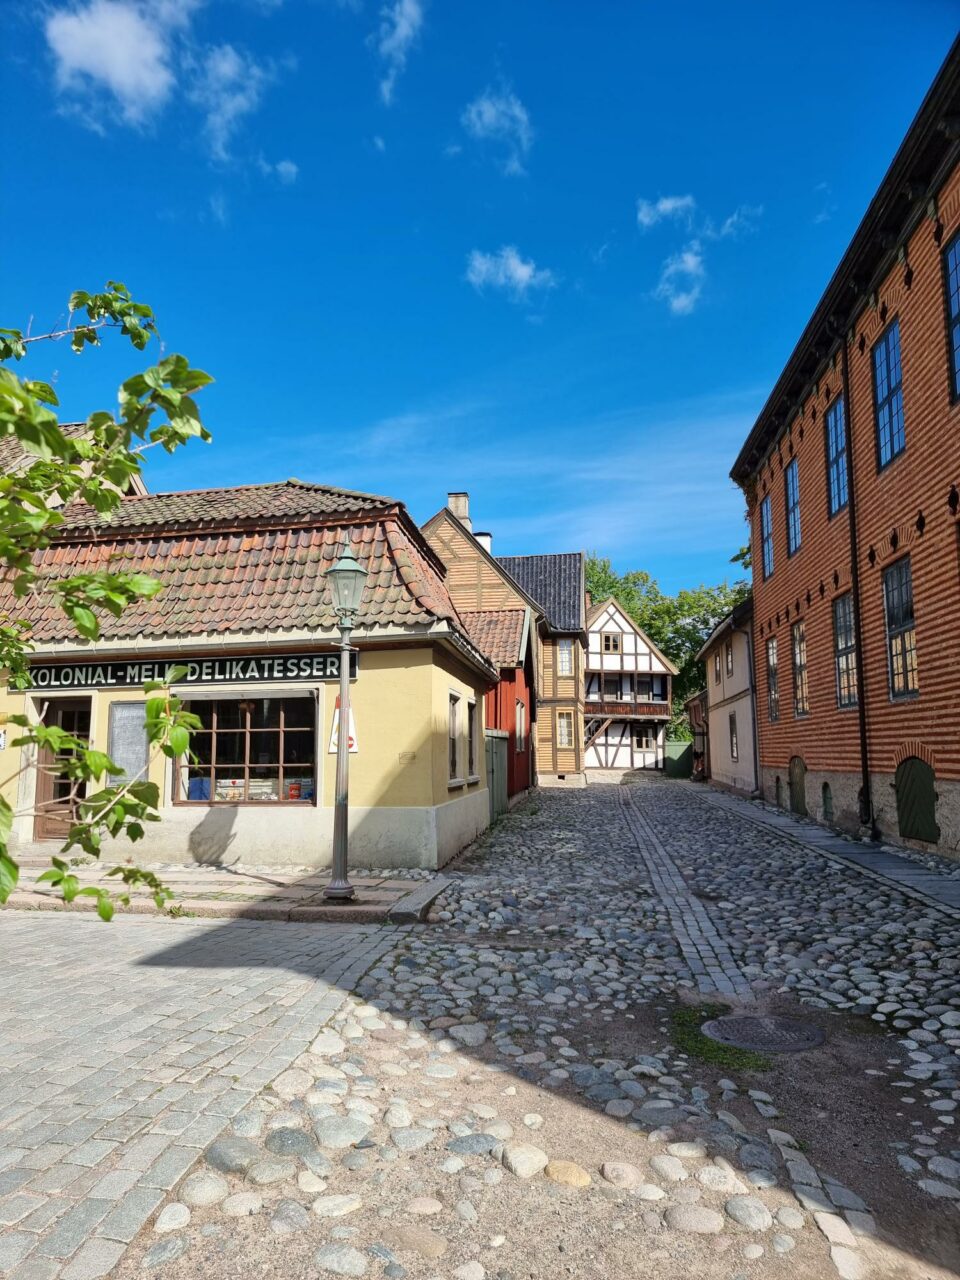 En bevart, gammel gate med brostein og gamle bygninger i murstein. Foto